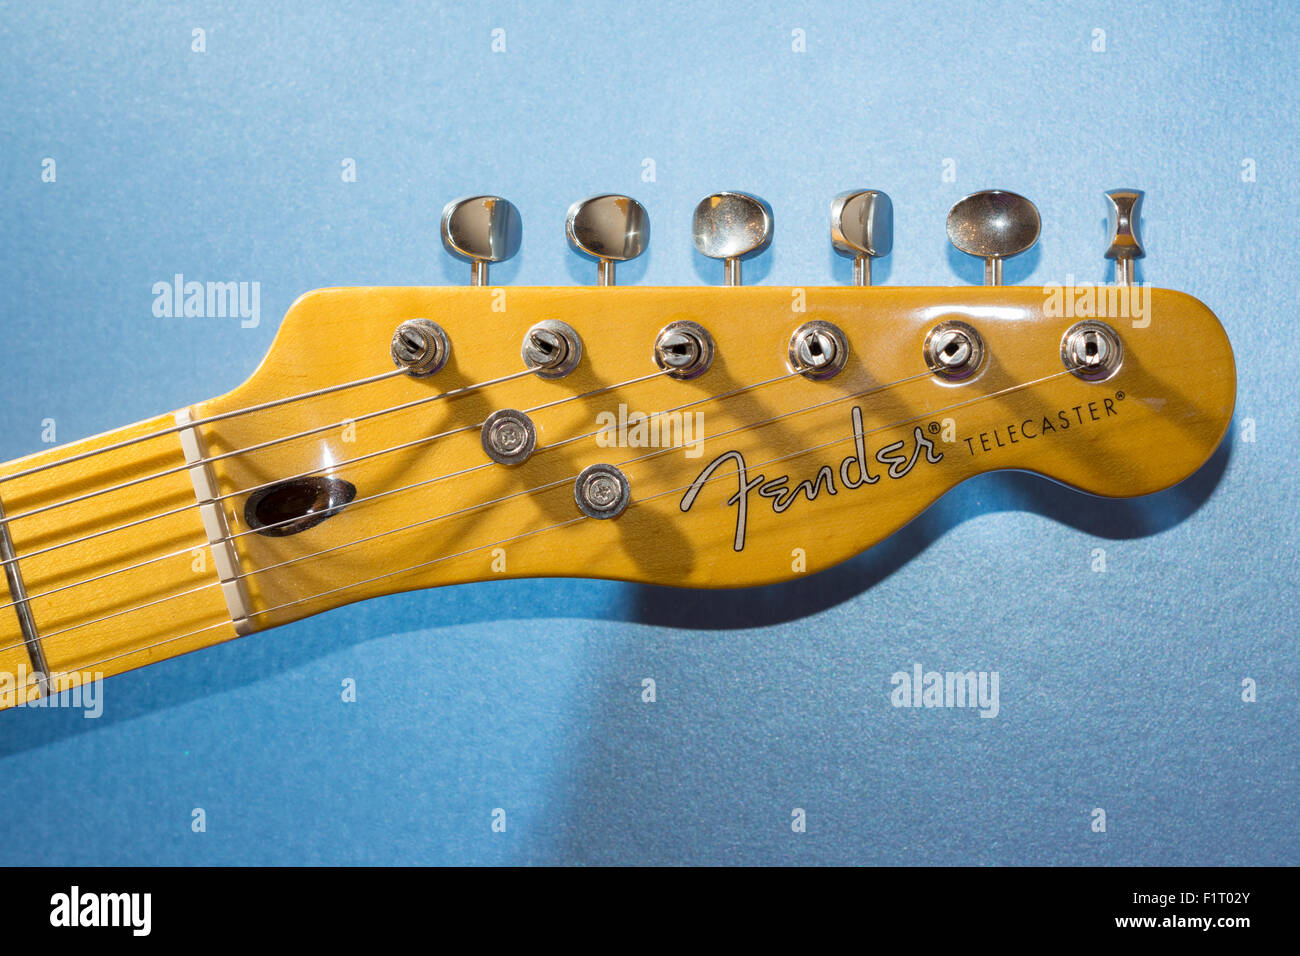 Ein Blick auf der Kopfplatte einer Gitarre Fender, moderne Player Telecaster  Plus Stockfotografie - Alamy